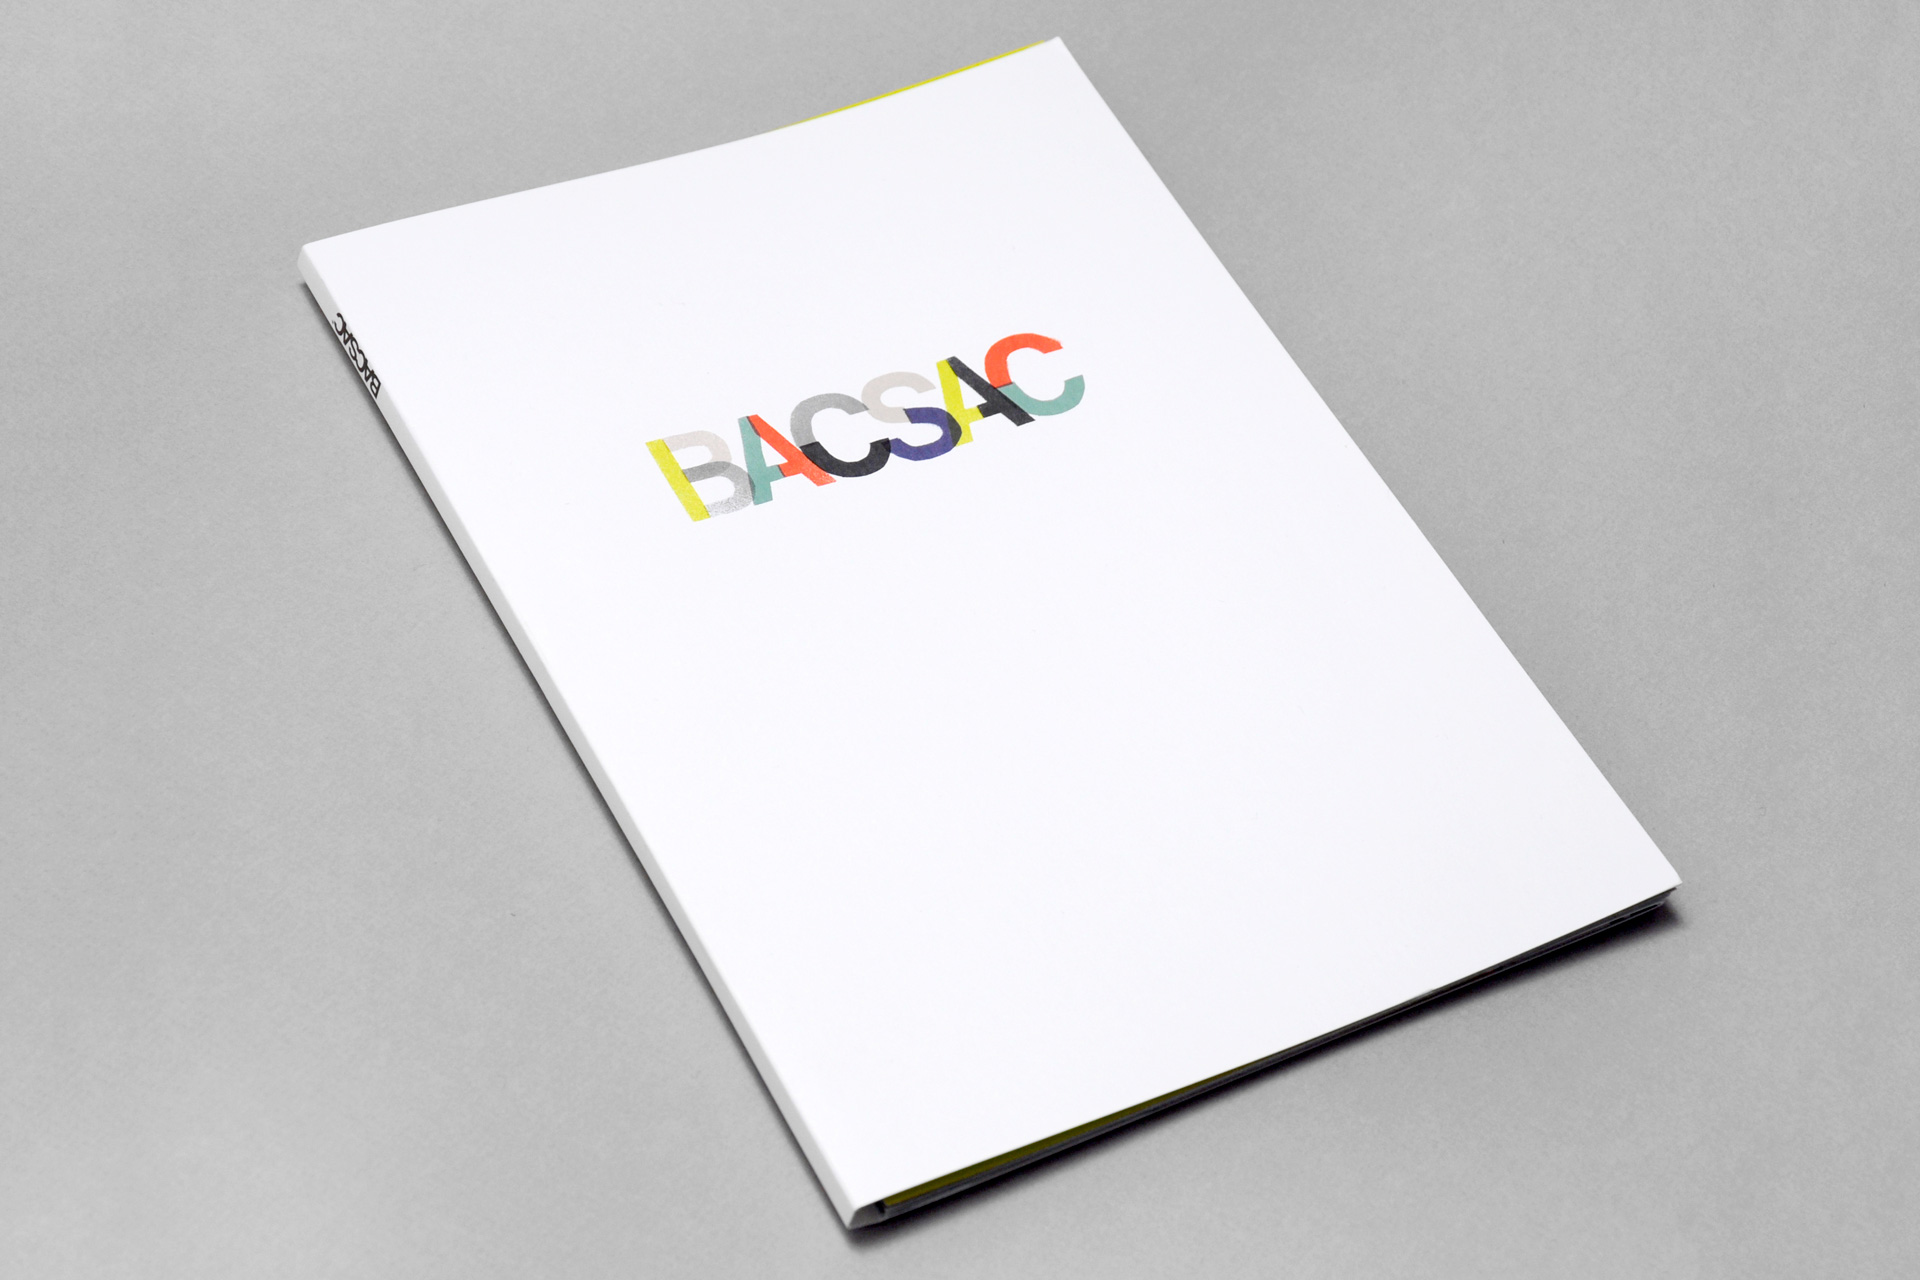 bacsac_catalogue_plastac